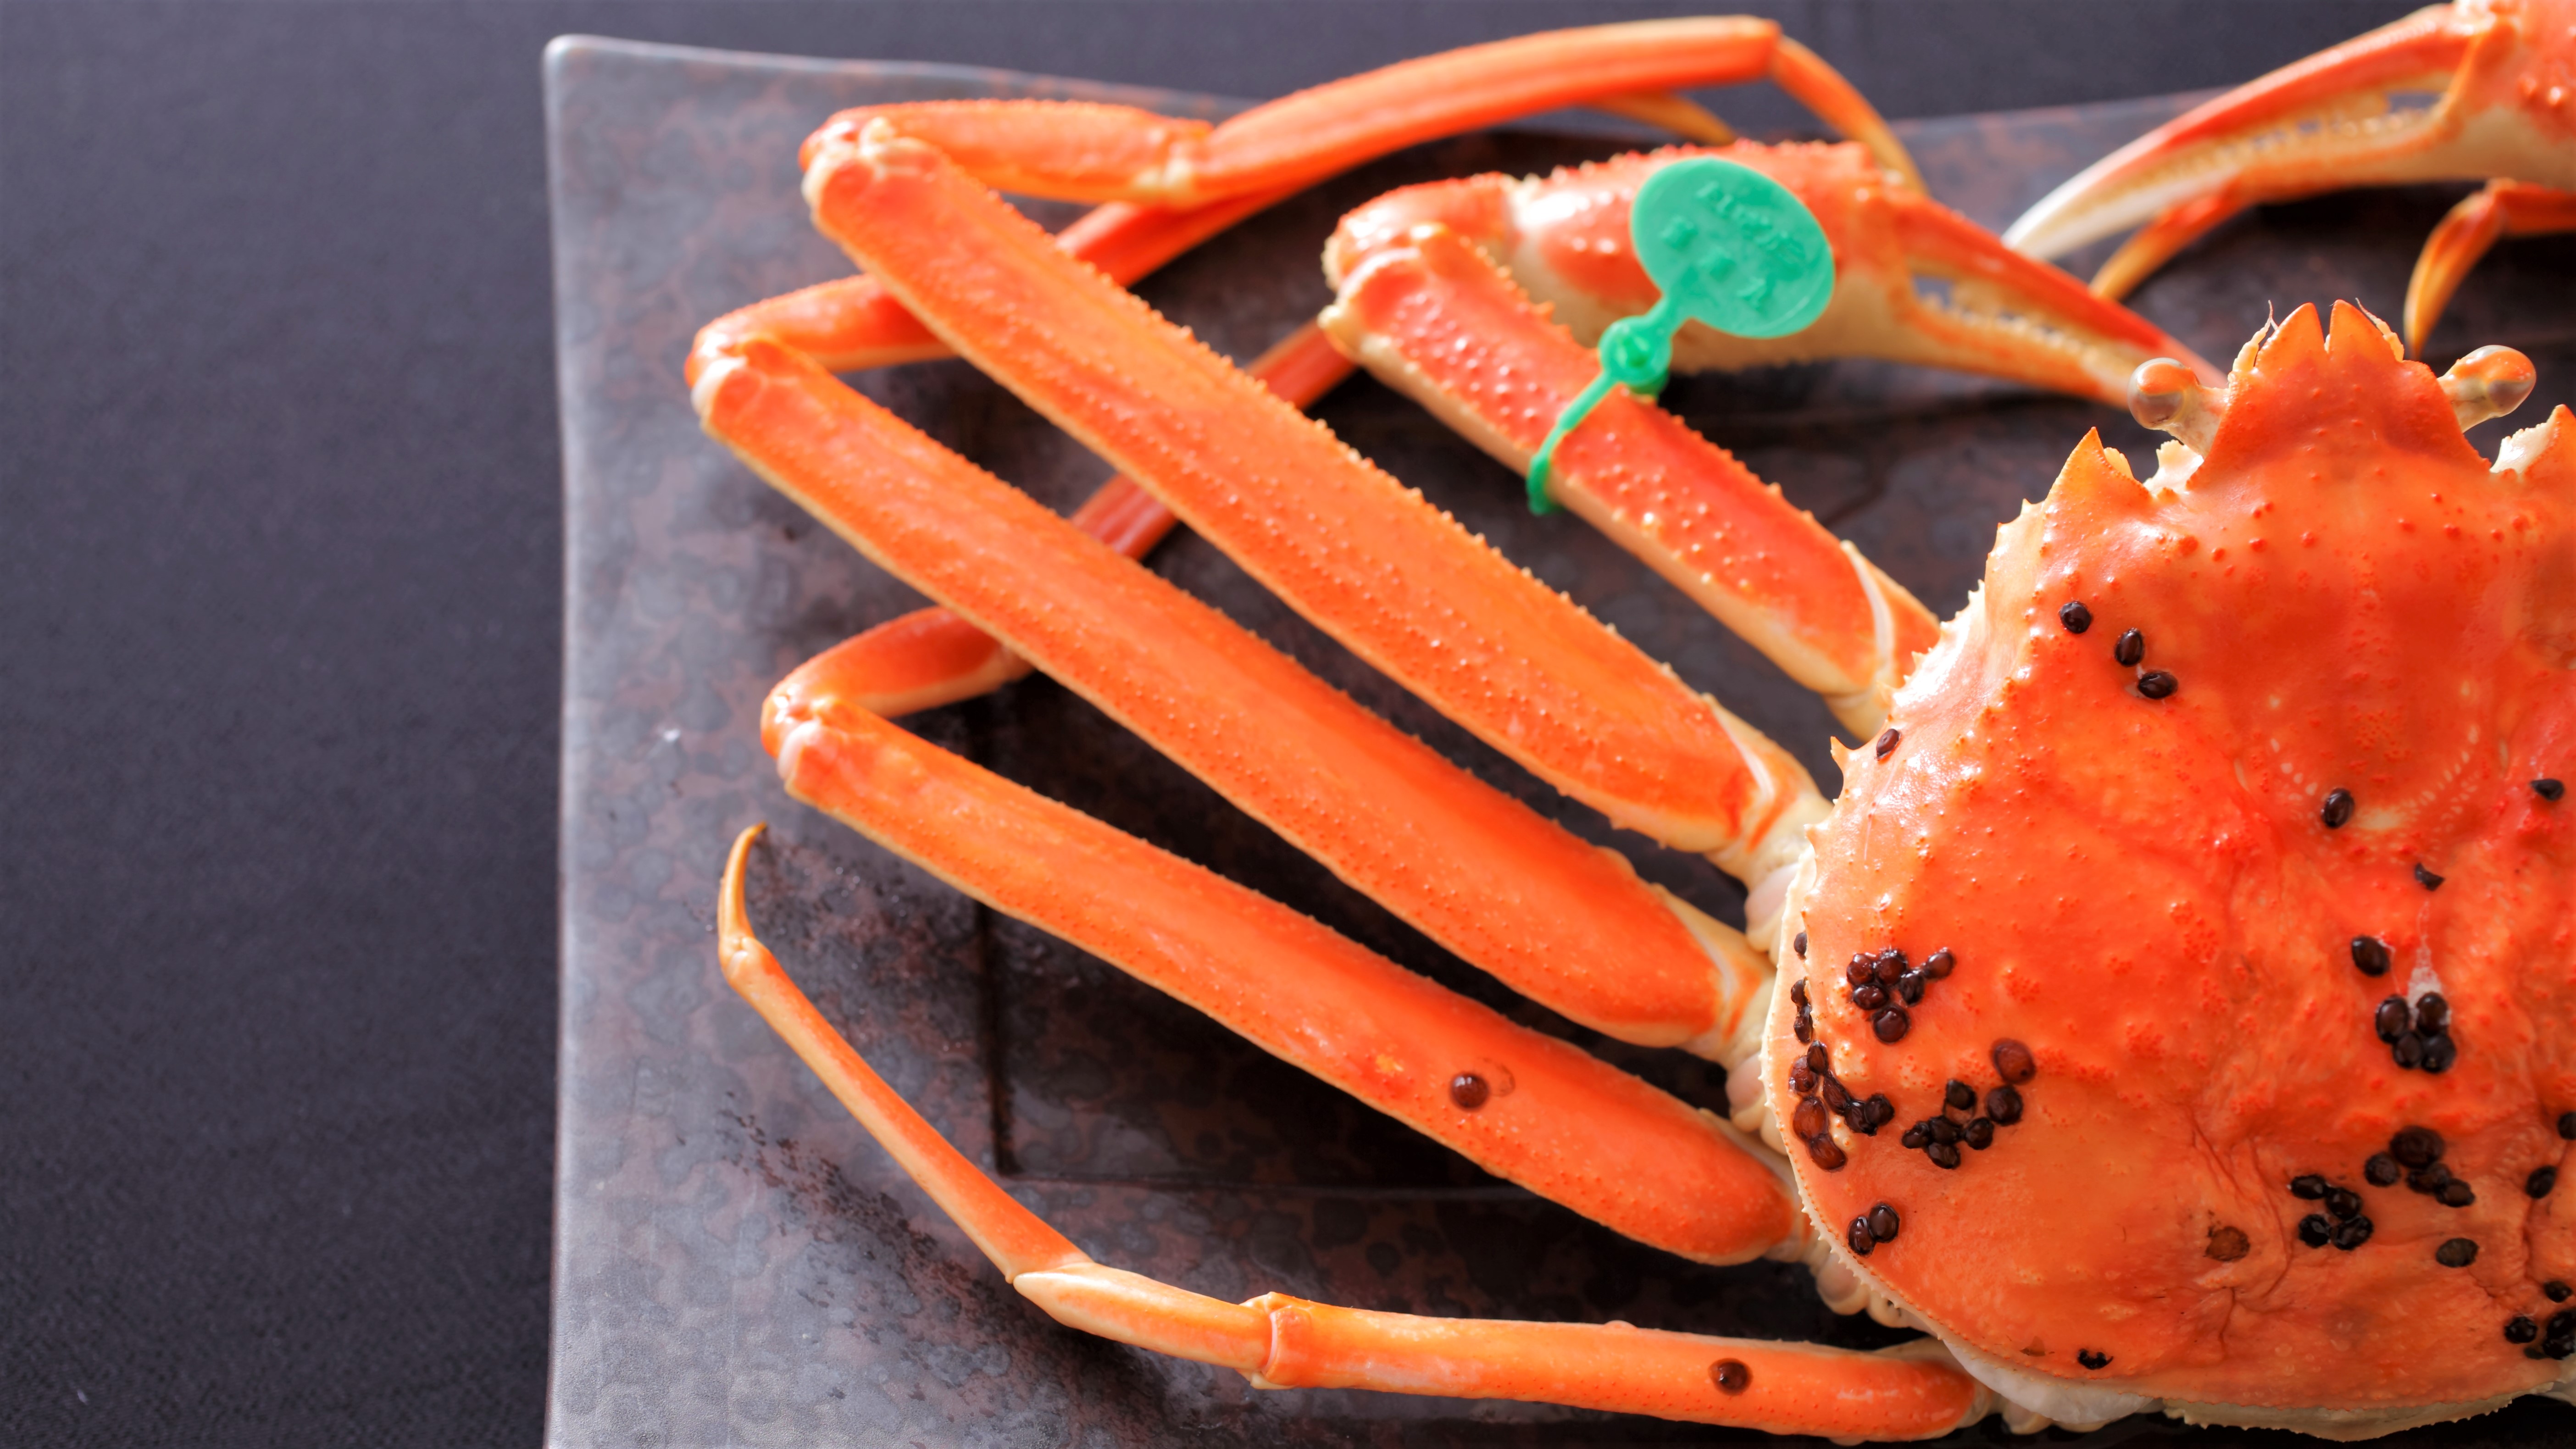 【幻の間人蟹】緑色のタグはブランド蟹の王様の証。茹でガニで素材の味を堪能する。